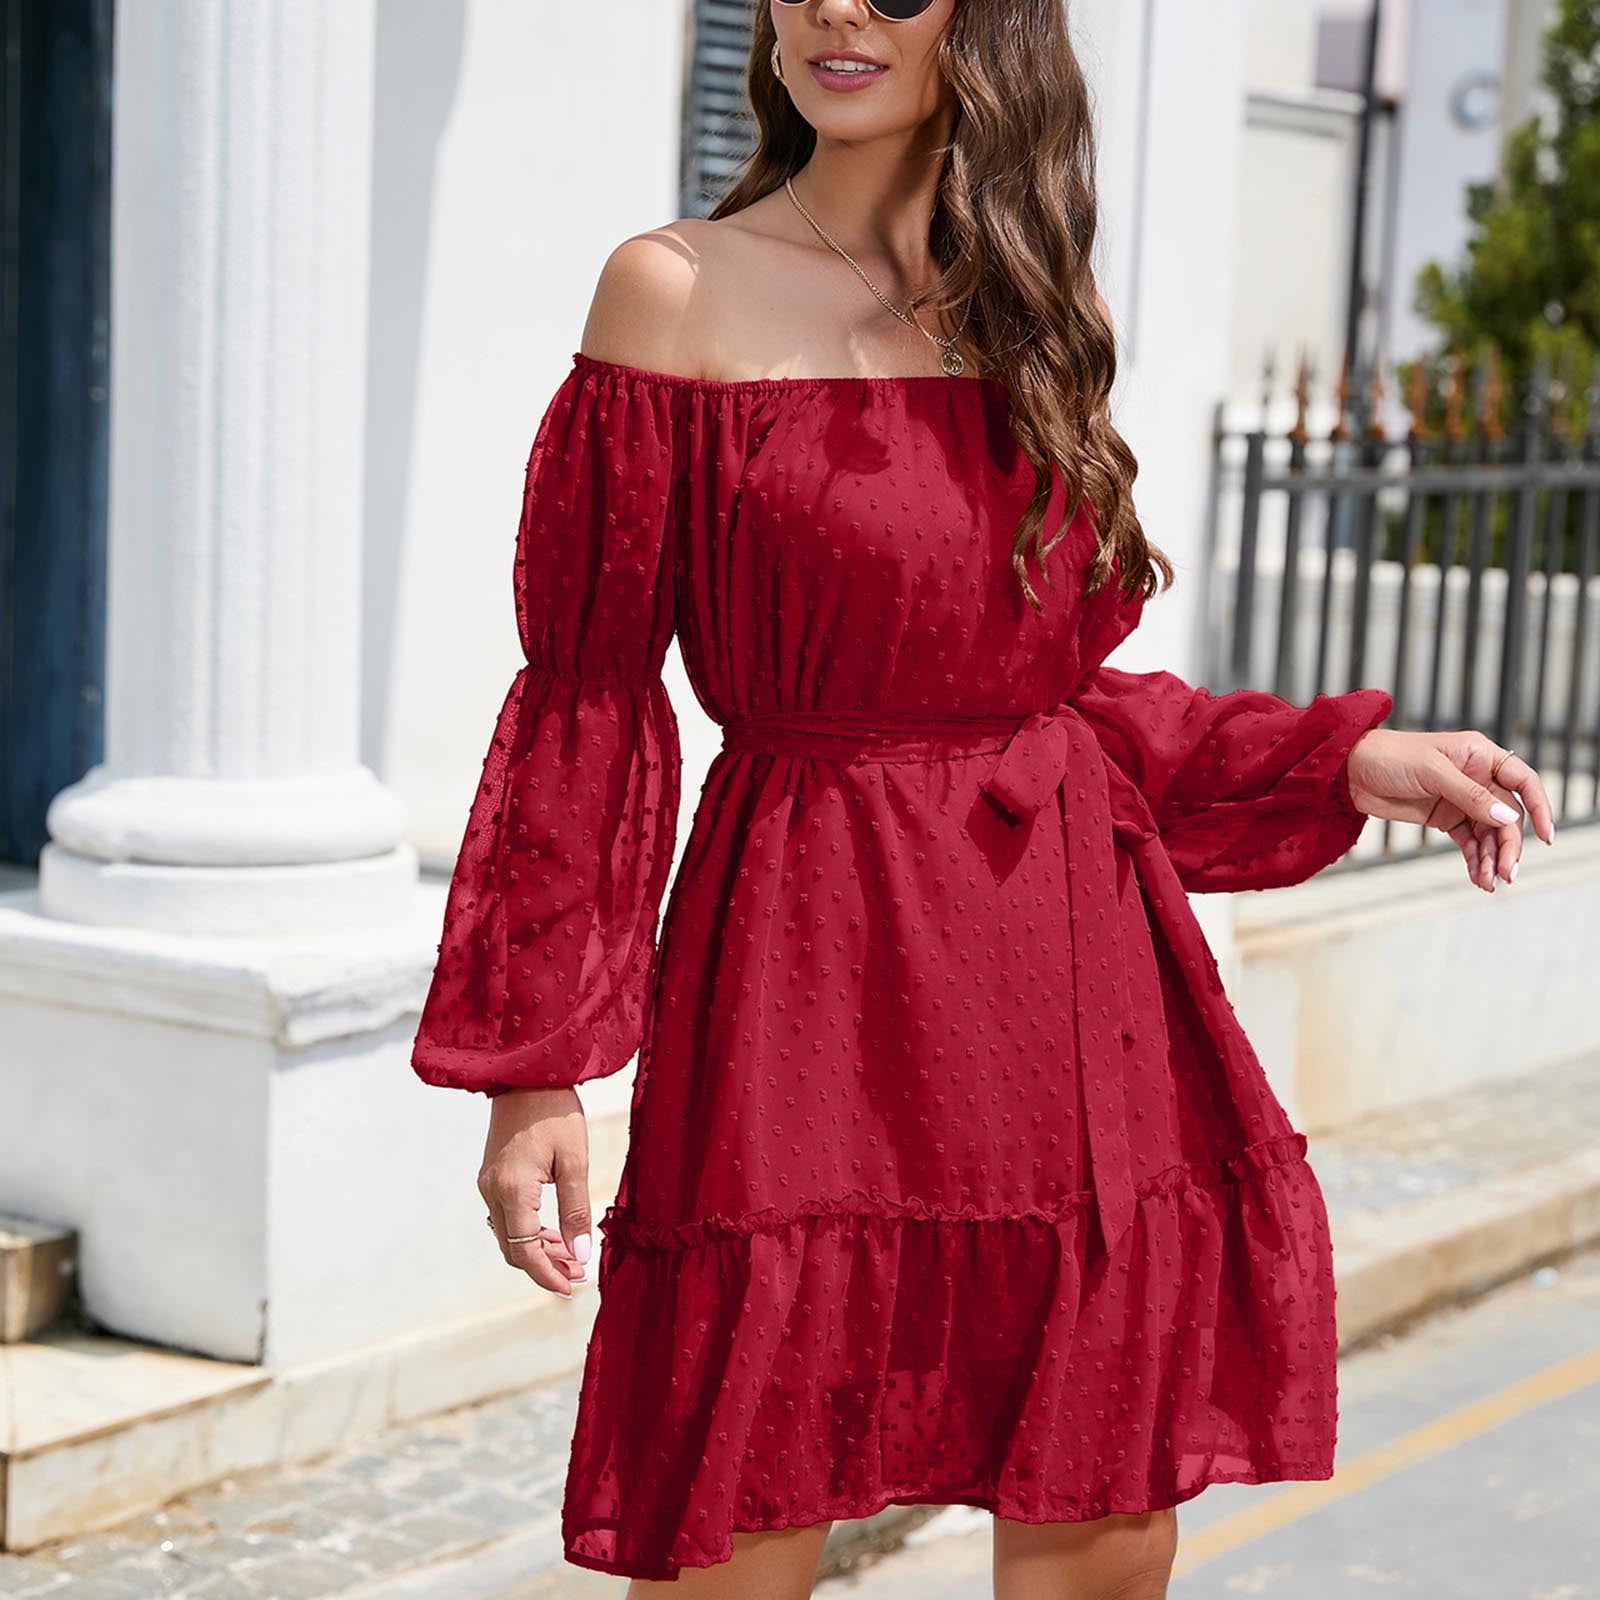 red summer dress